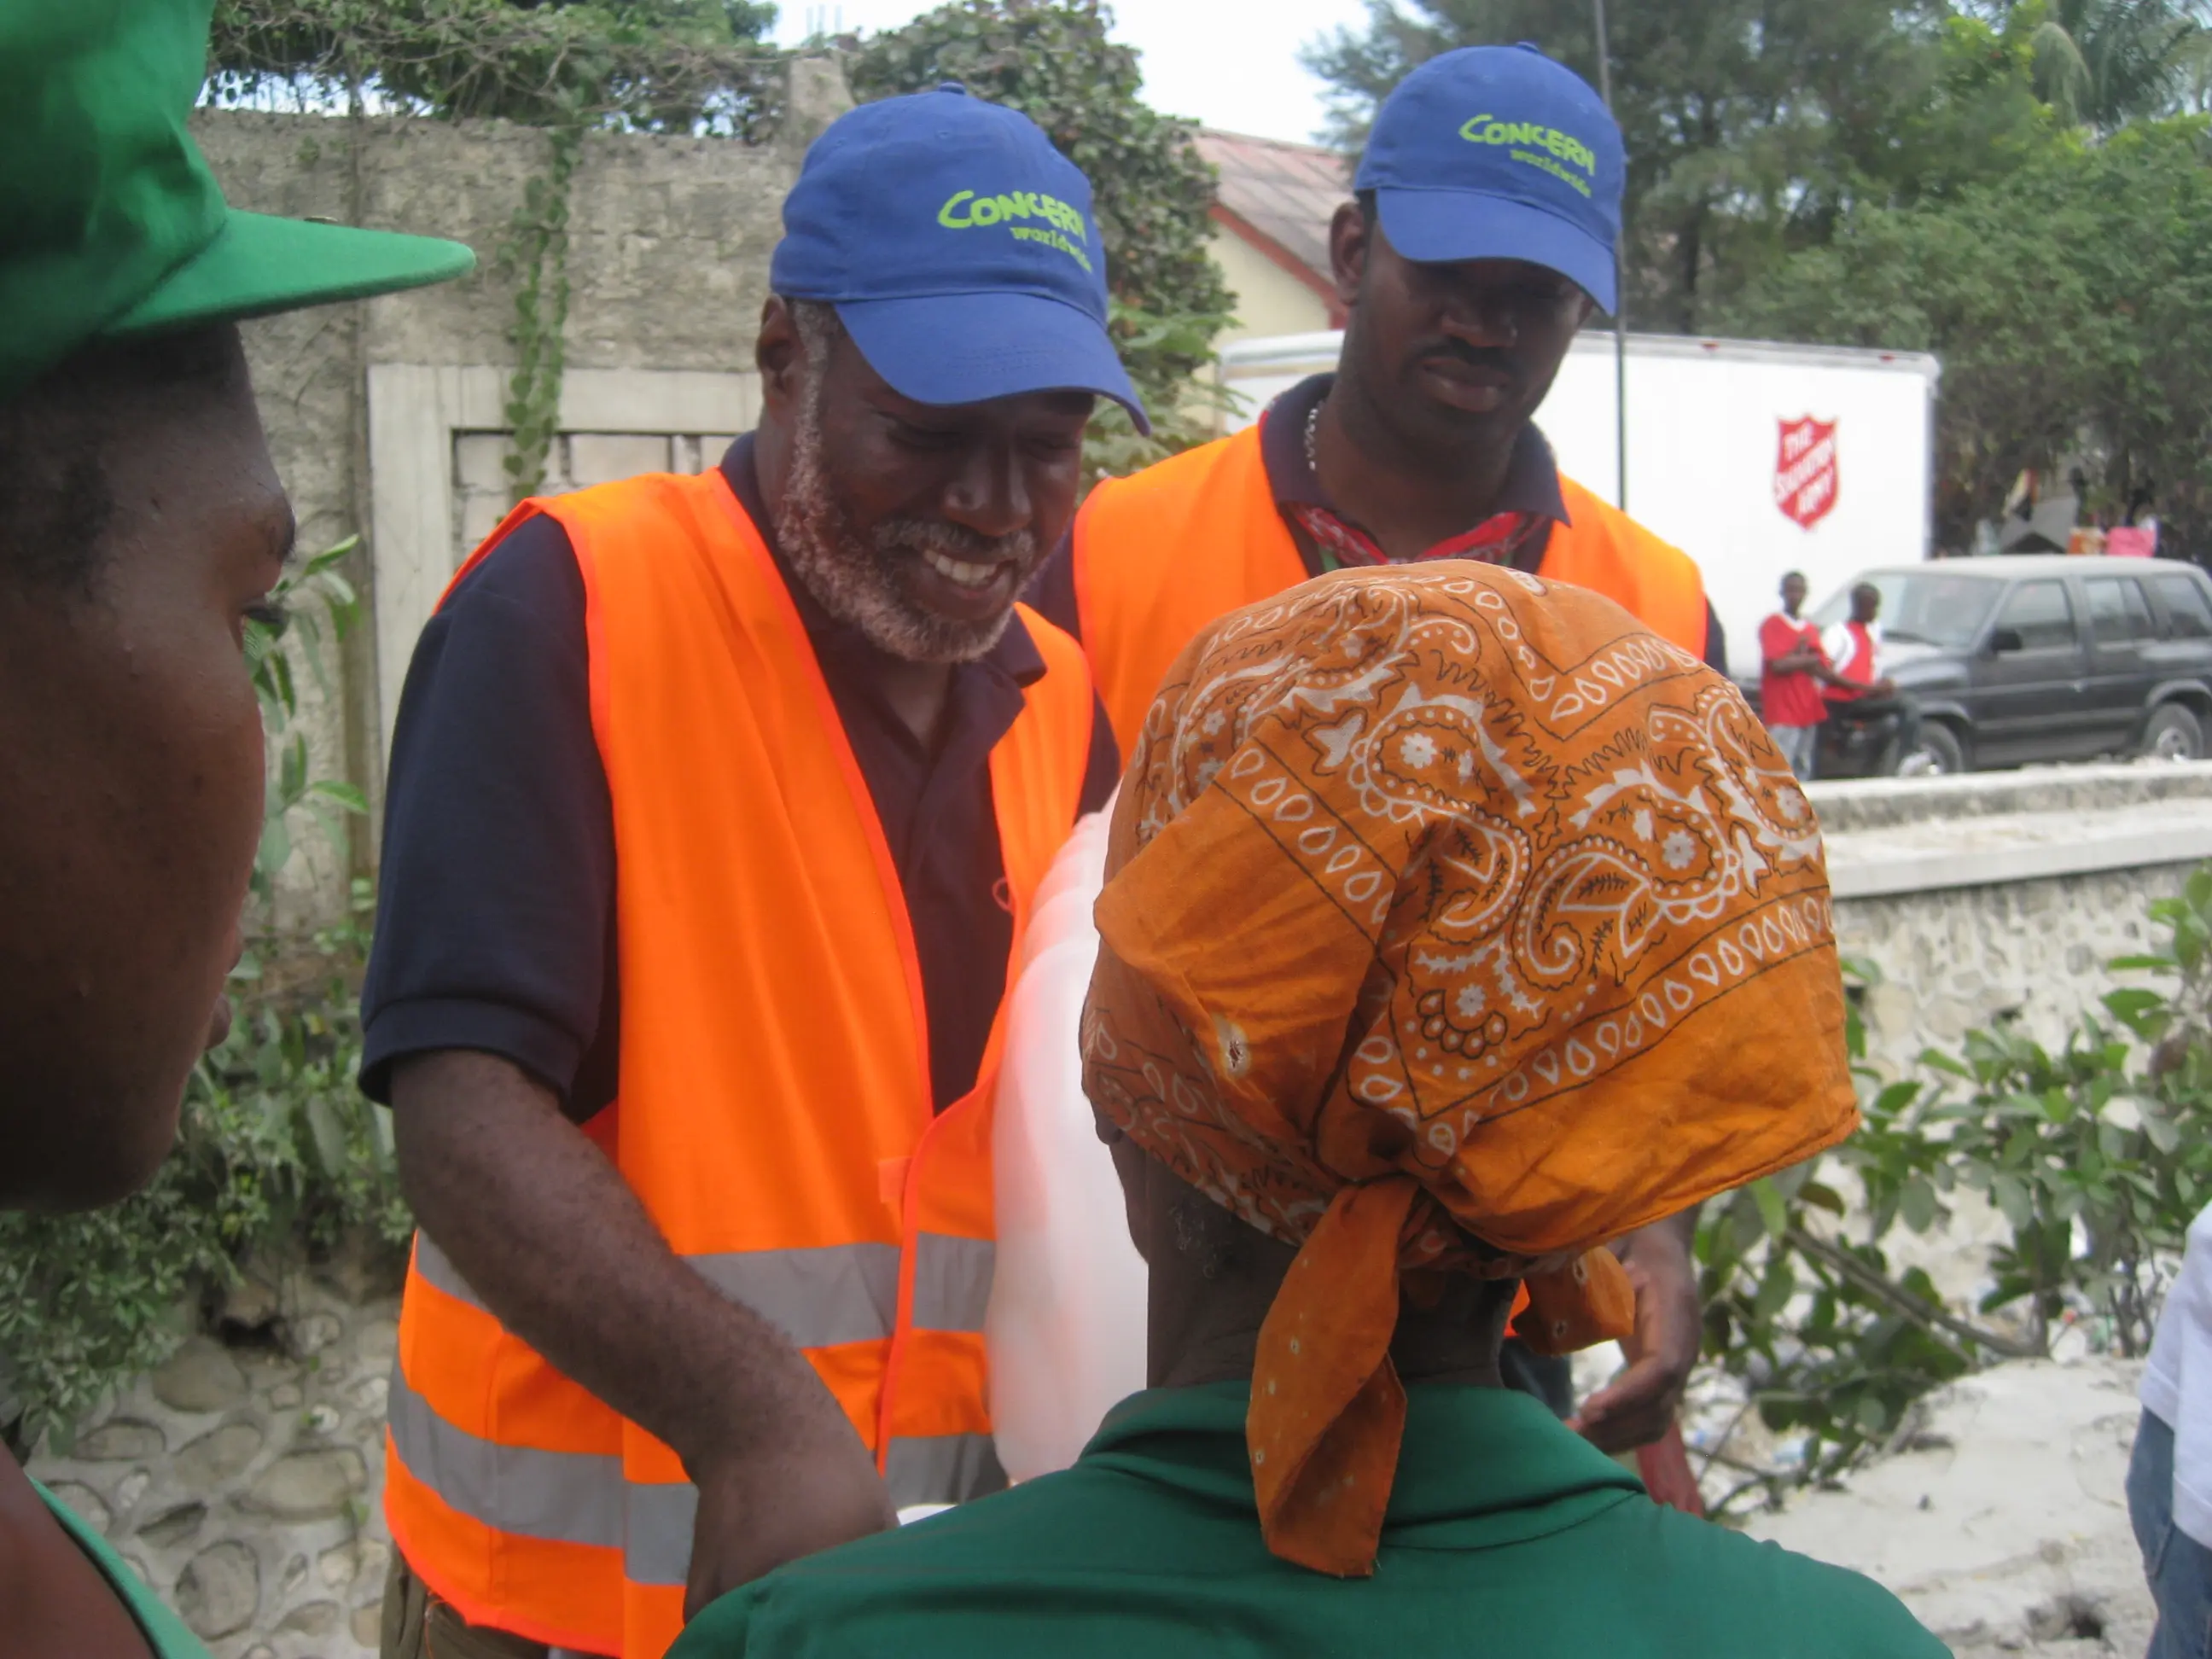 Earthquake relief efforts in Haiti, 2010